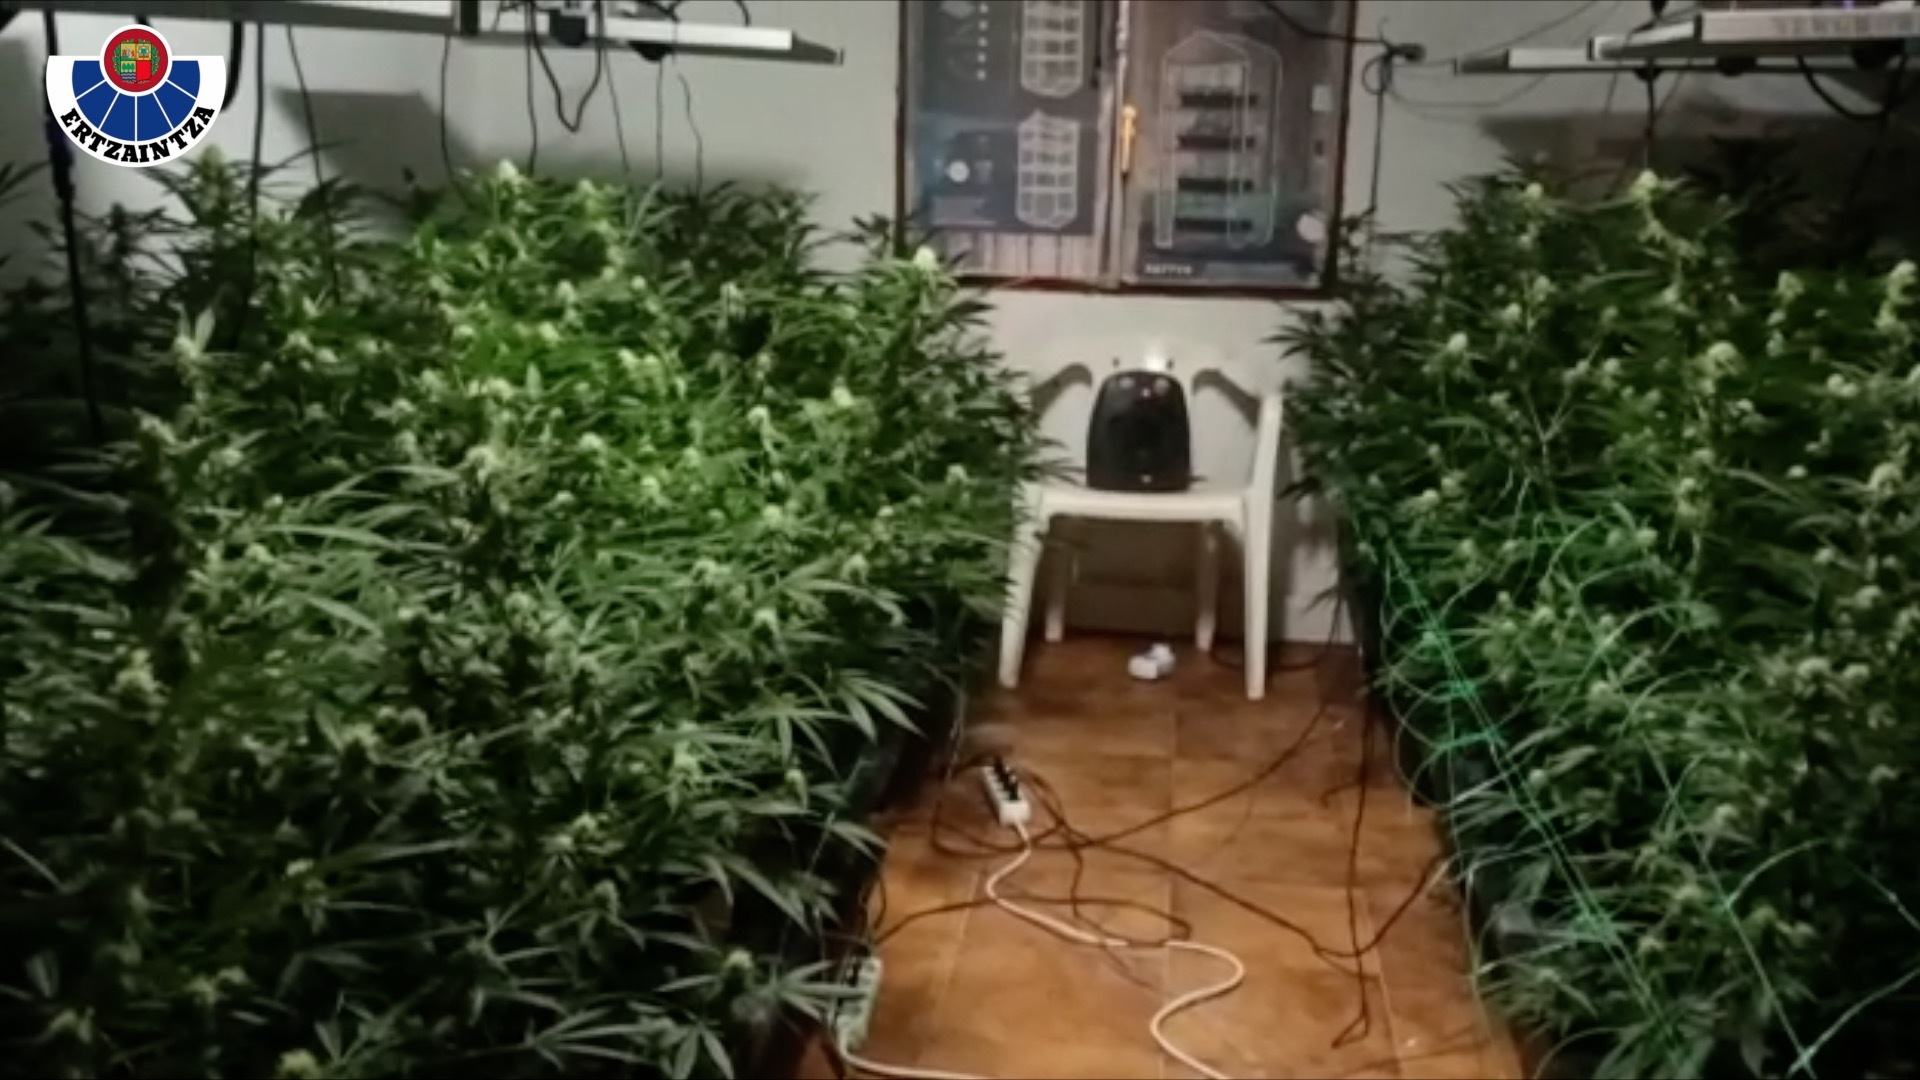 Imagen de uno de los cultivos ilegales de marihuana en una casa en las Merindades (Burgos).